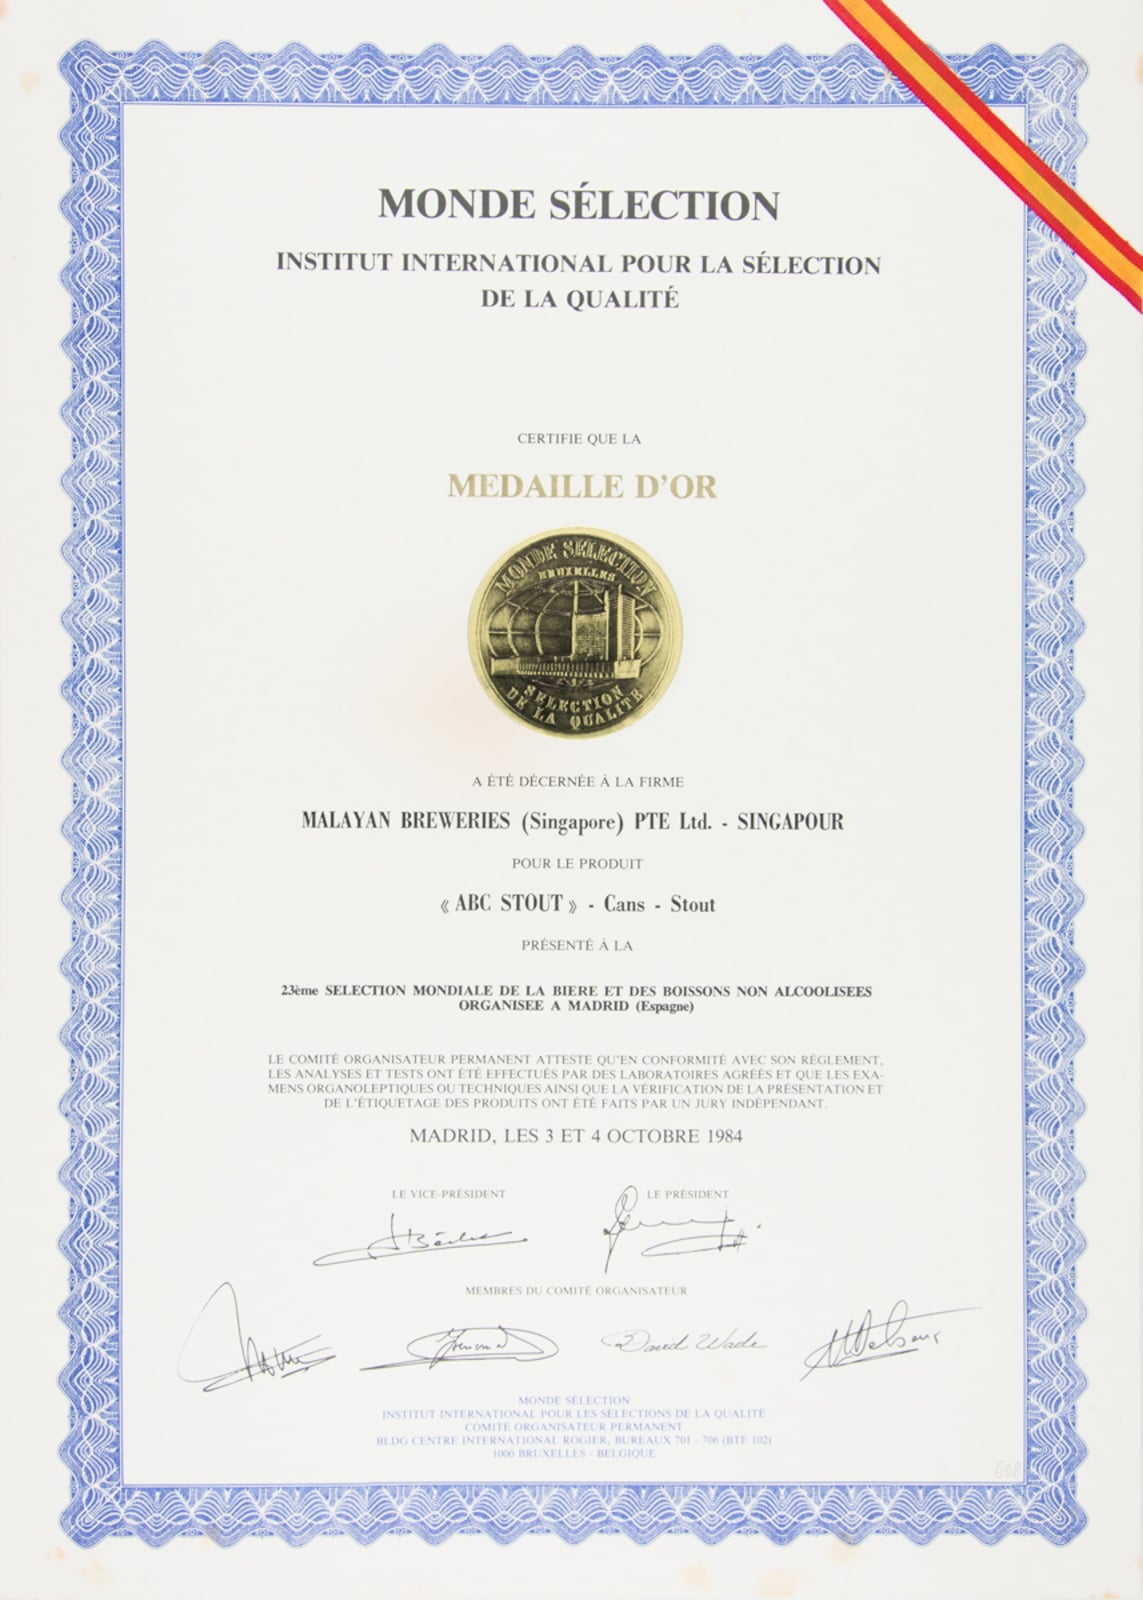 ABC Stout - Cans - Stout - Medaille d'Or, Monde Sélection Certificate 1984